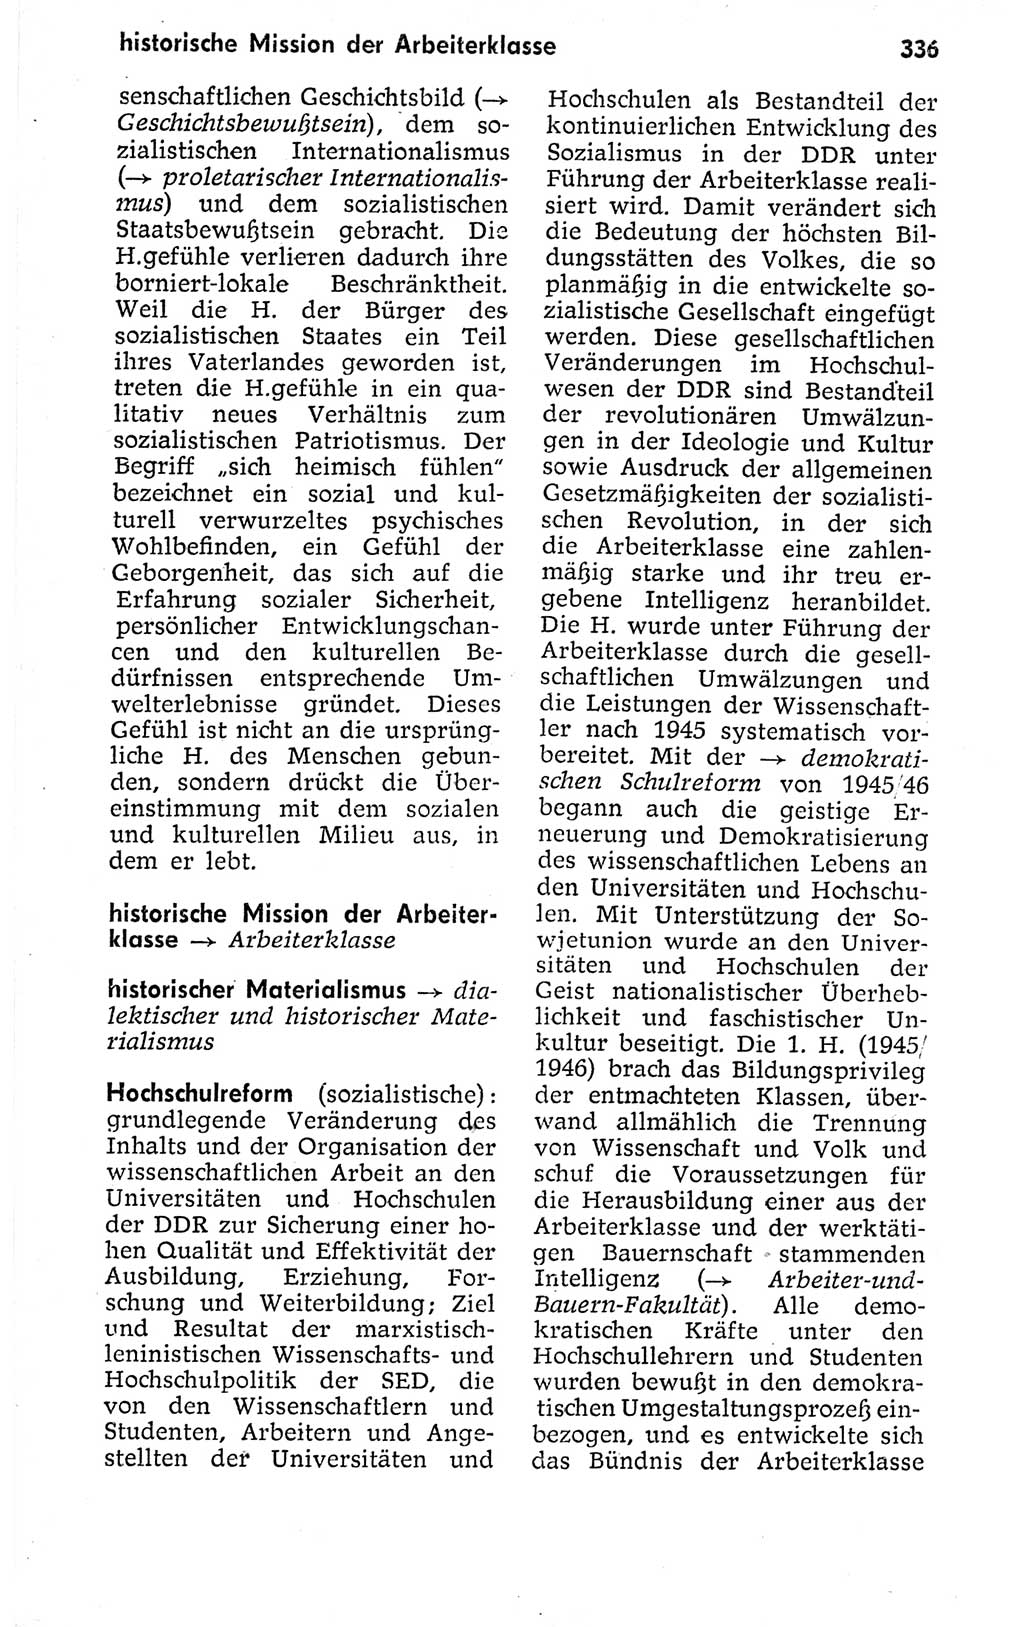 Kleines politisches Wörterbuch [Deutsche Demokratische Republik (DDR)] 1973, Seite 336 (Kl. pol. Wb. DDR 1973, S. 336)